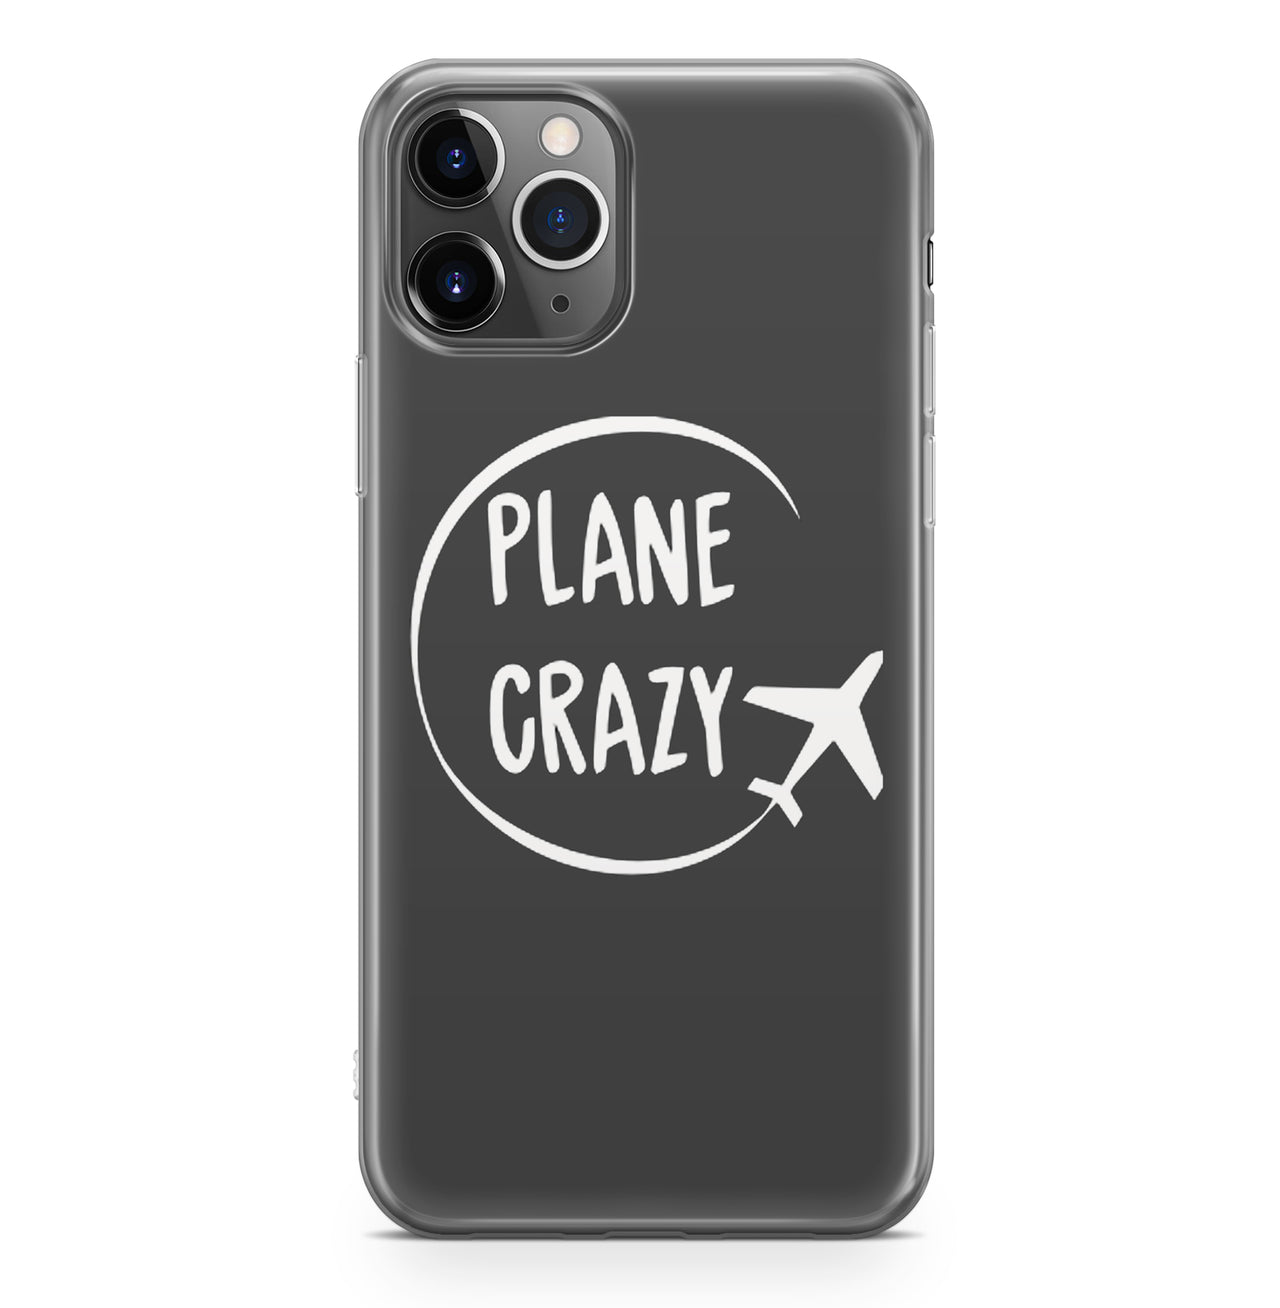 Plane Crazy Designed iPhone Cases